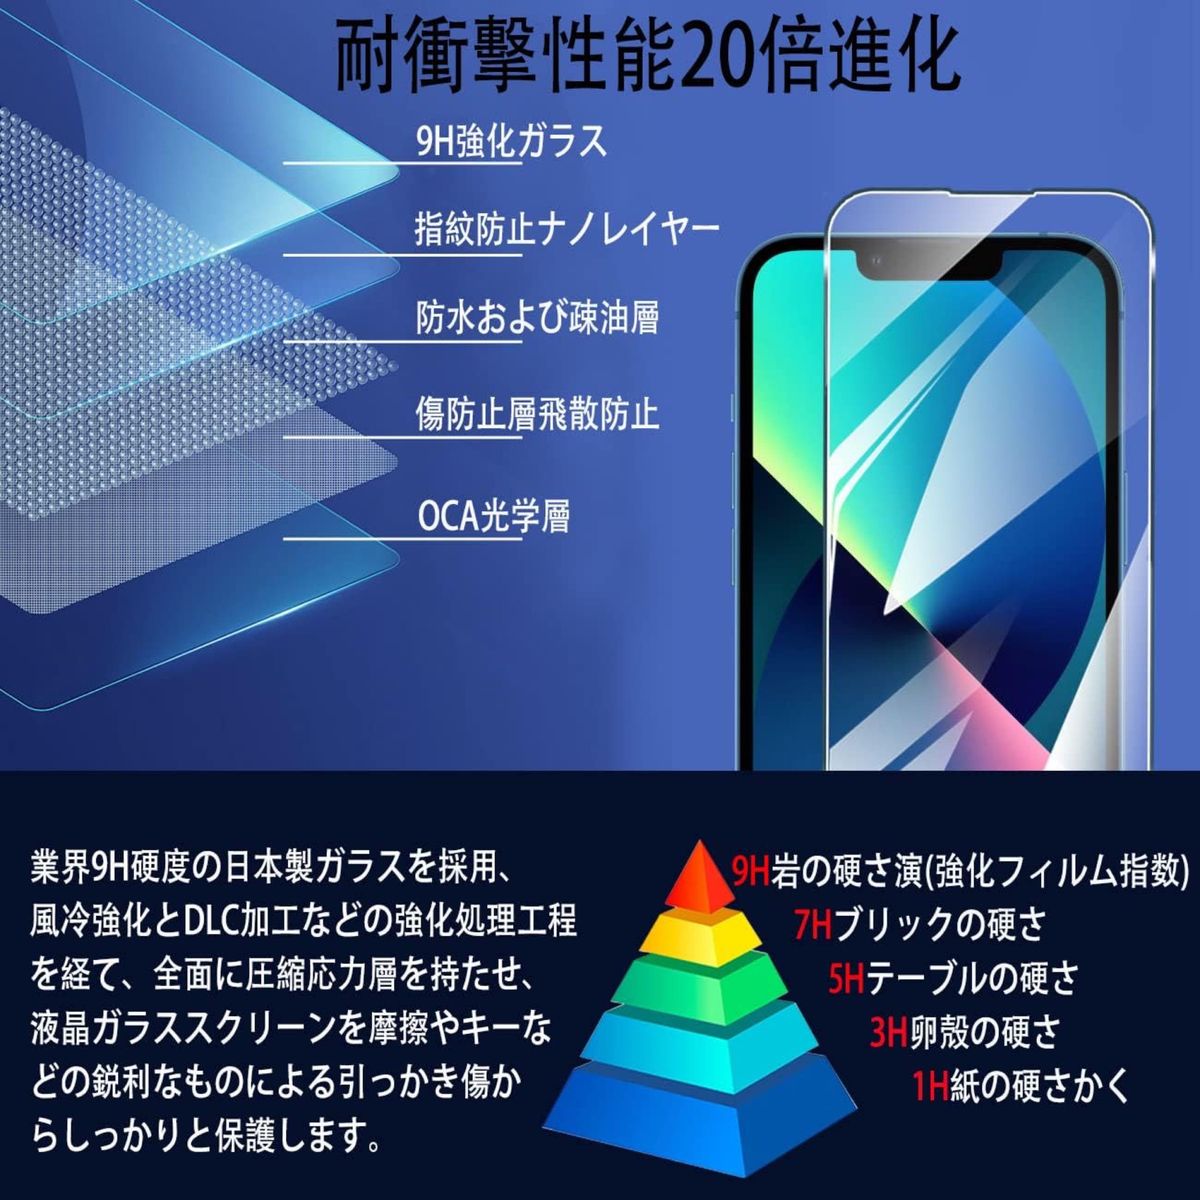 【2枚入】iPhone13 iphone13pro iPhone14 ガラスフィルム ガイド枠付き 飛散防止 耐衝撃 指紋防止